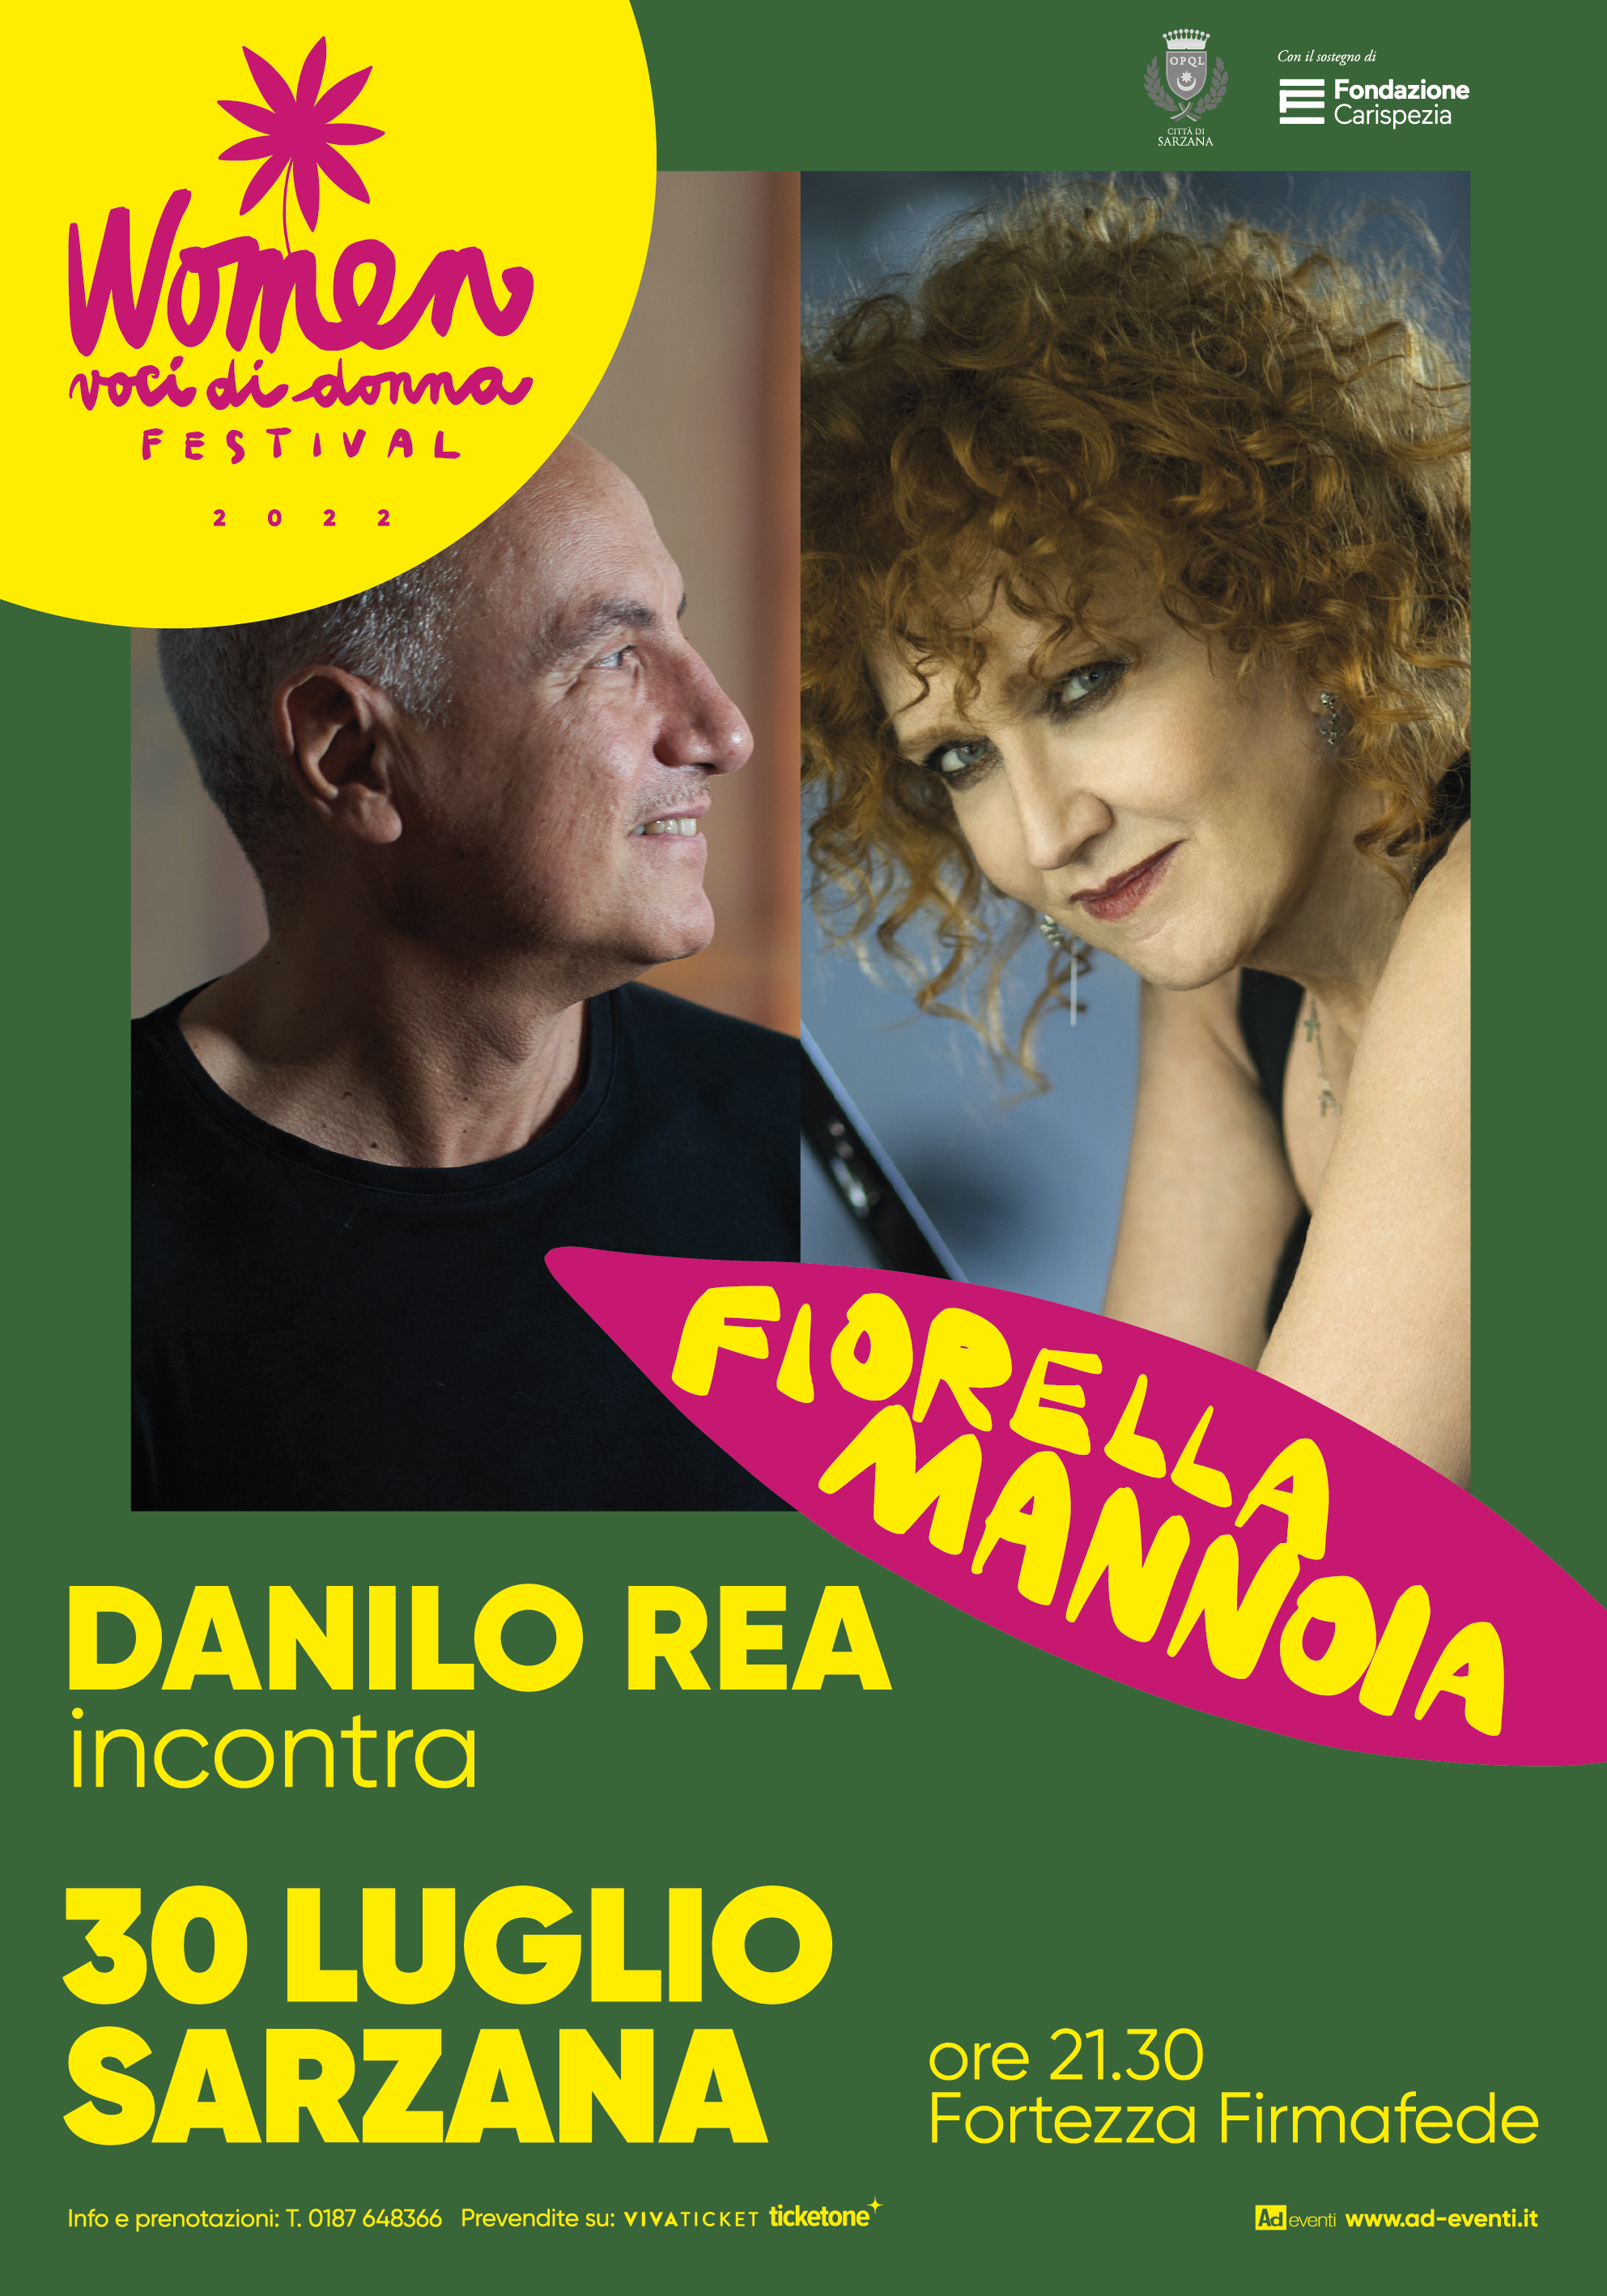 Danilo Rea incontra Fiorella Mannoia – Fortezza Firmafede, Sarzana